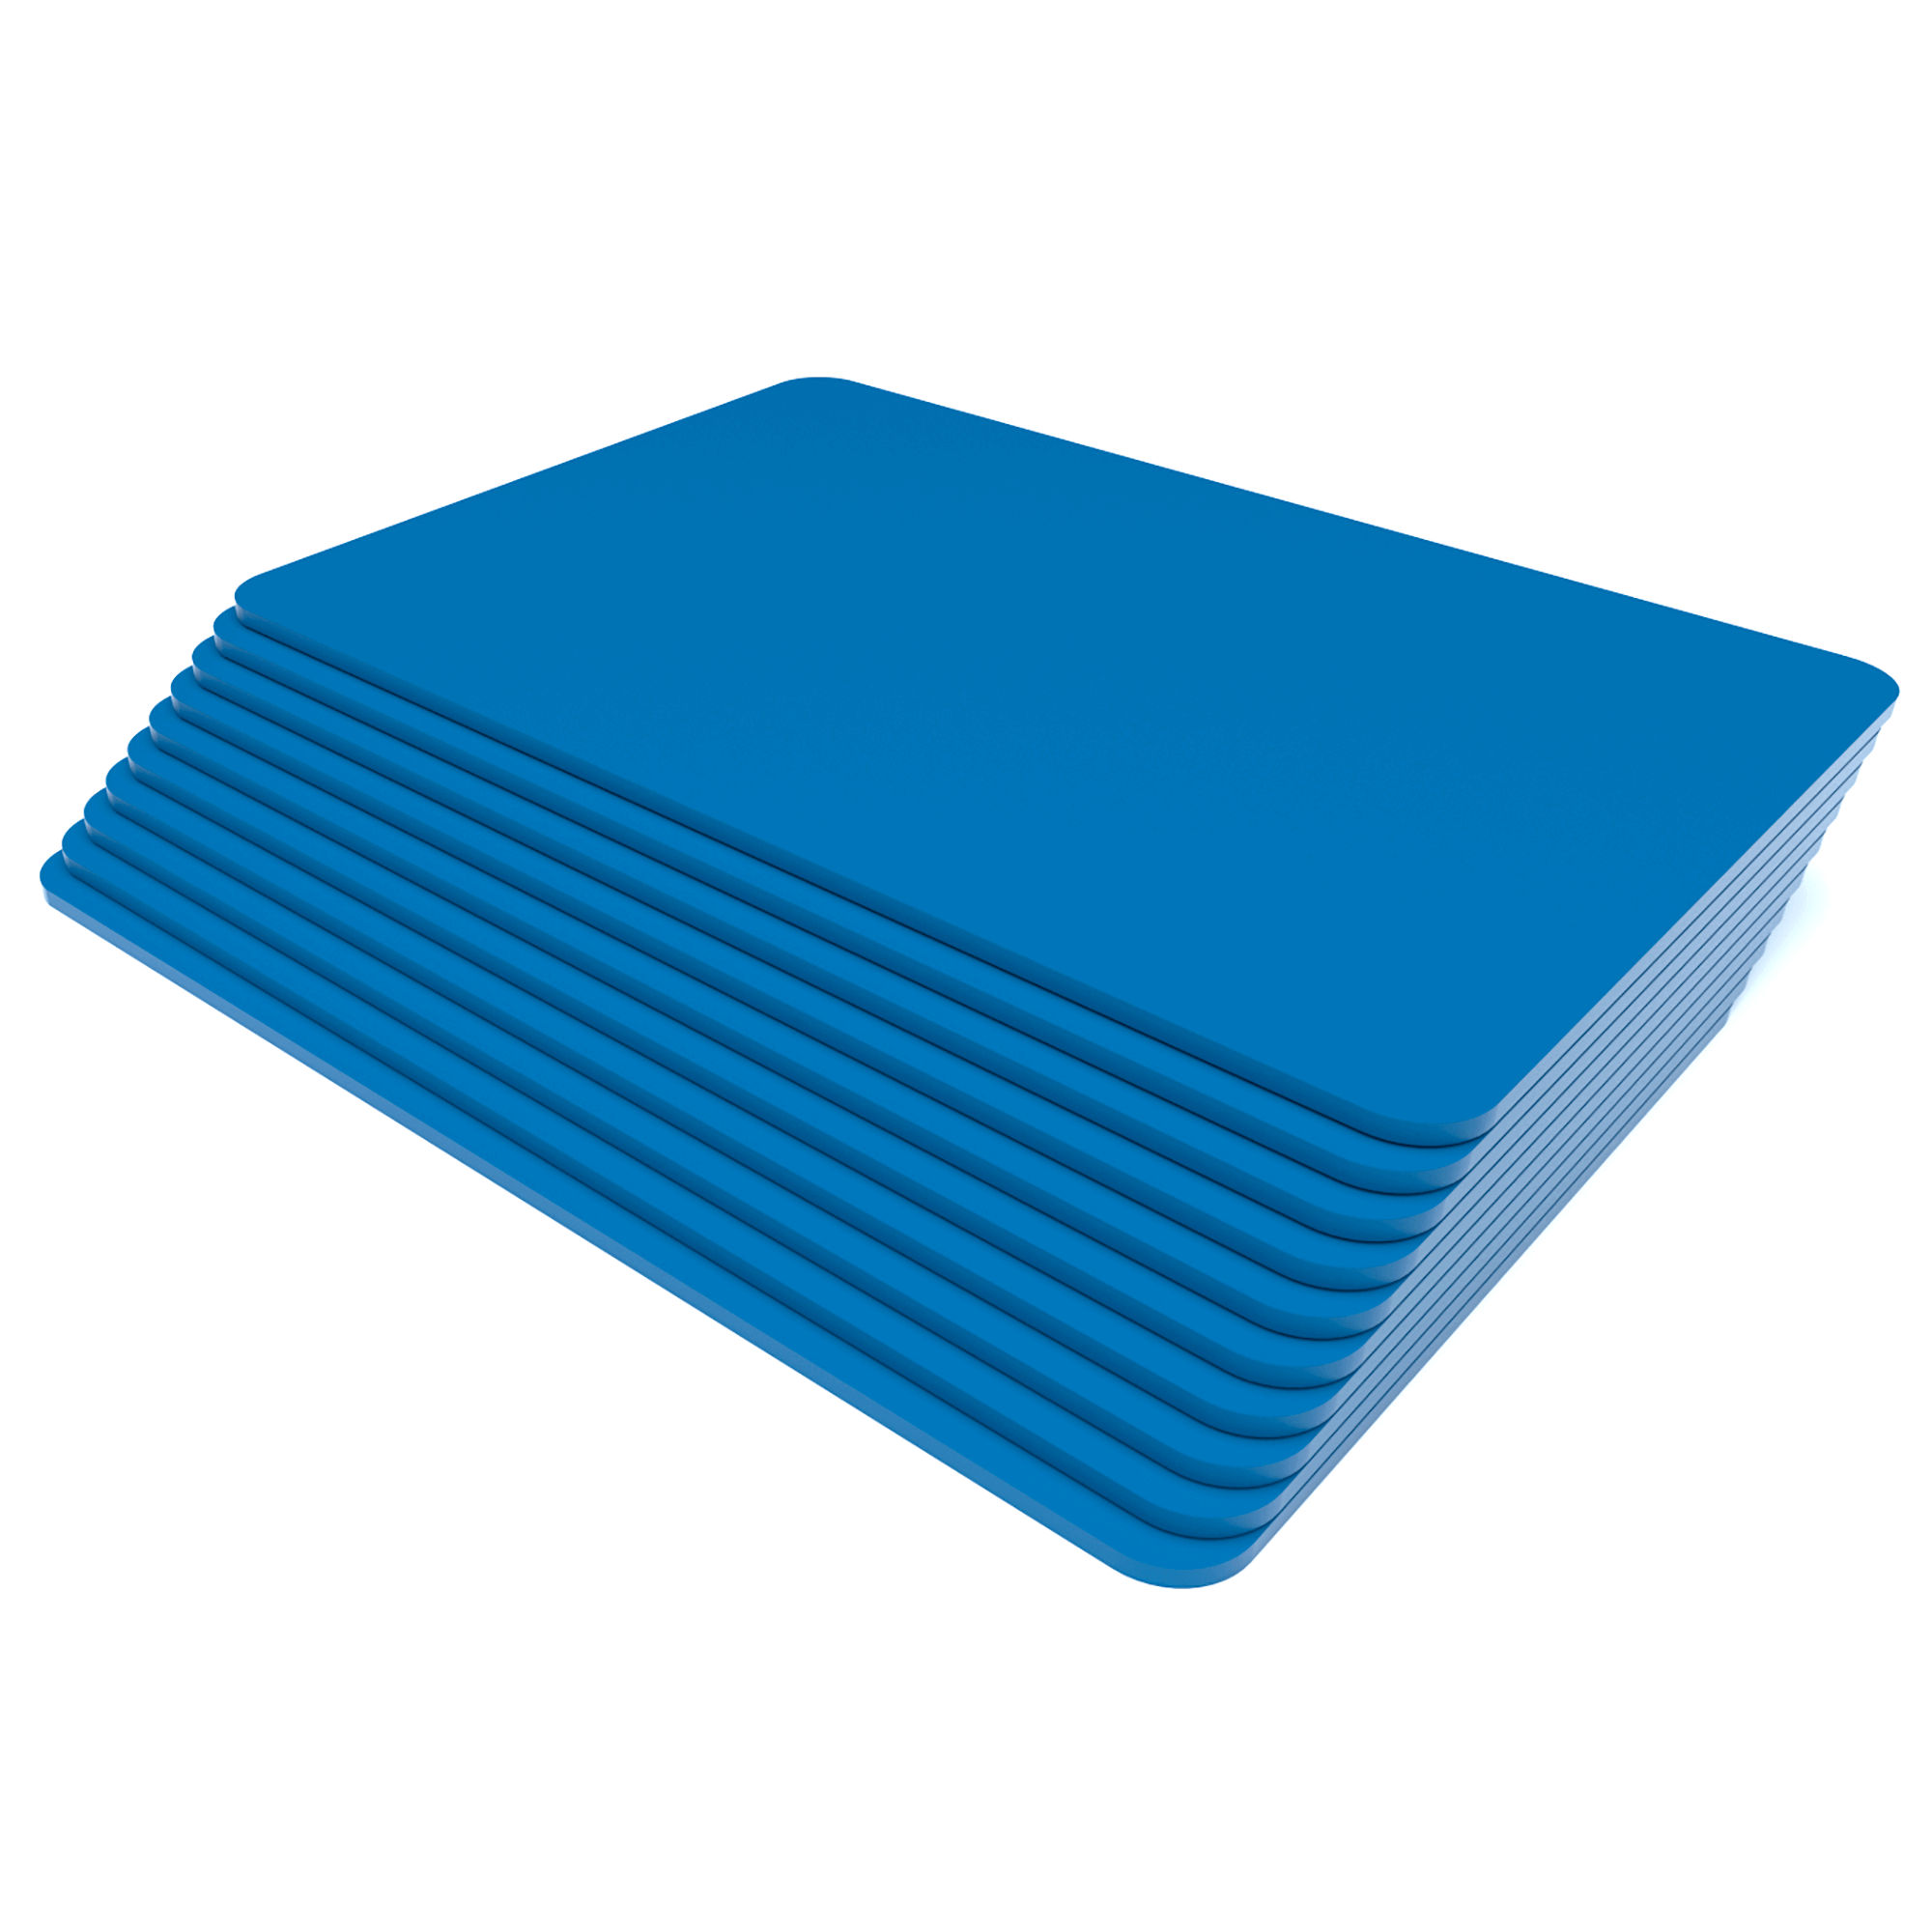 Placas para Artesanato em  Eva  34,5cm X 24,5cm X 5mm - Azul - NEOMAXI